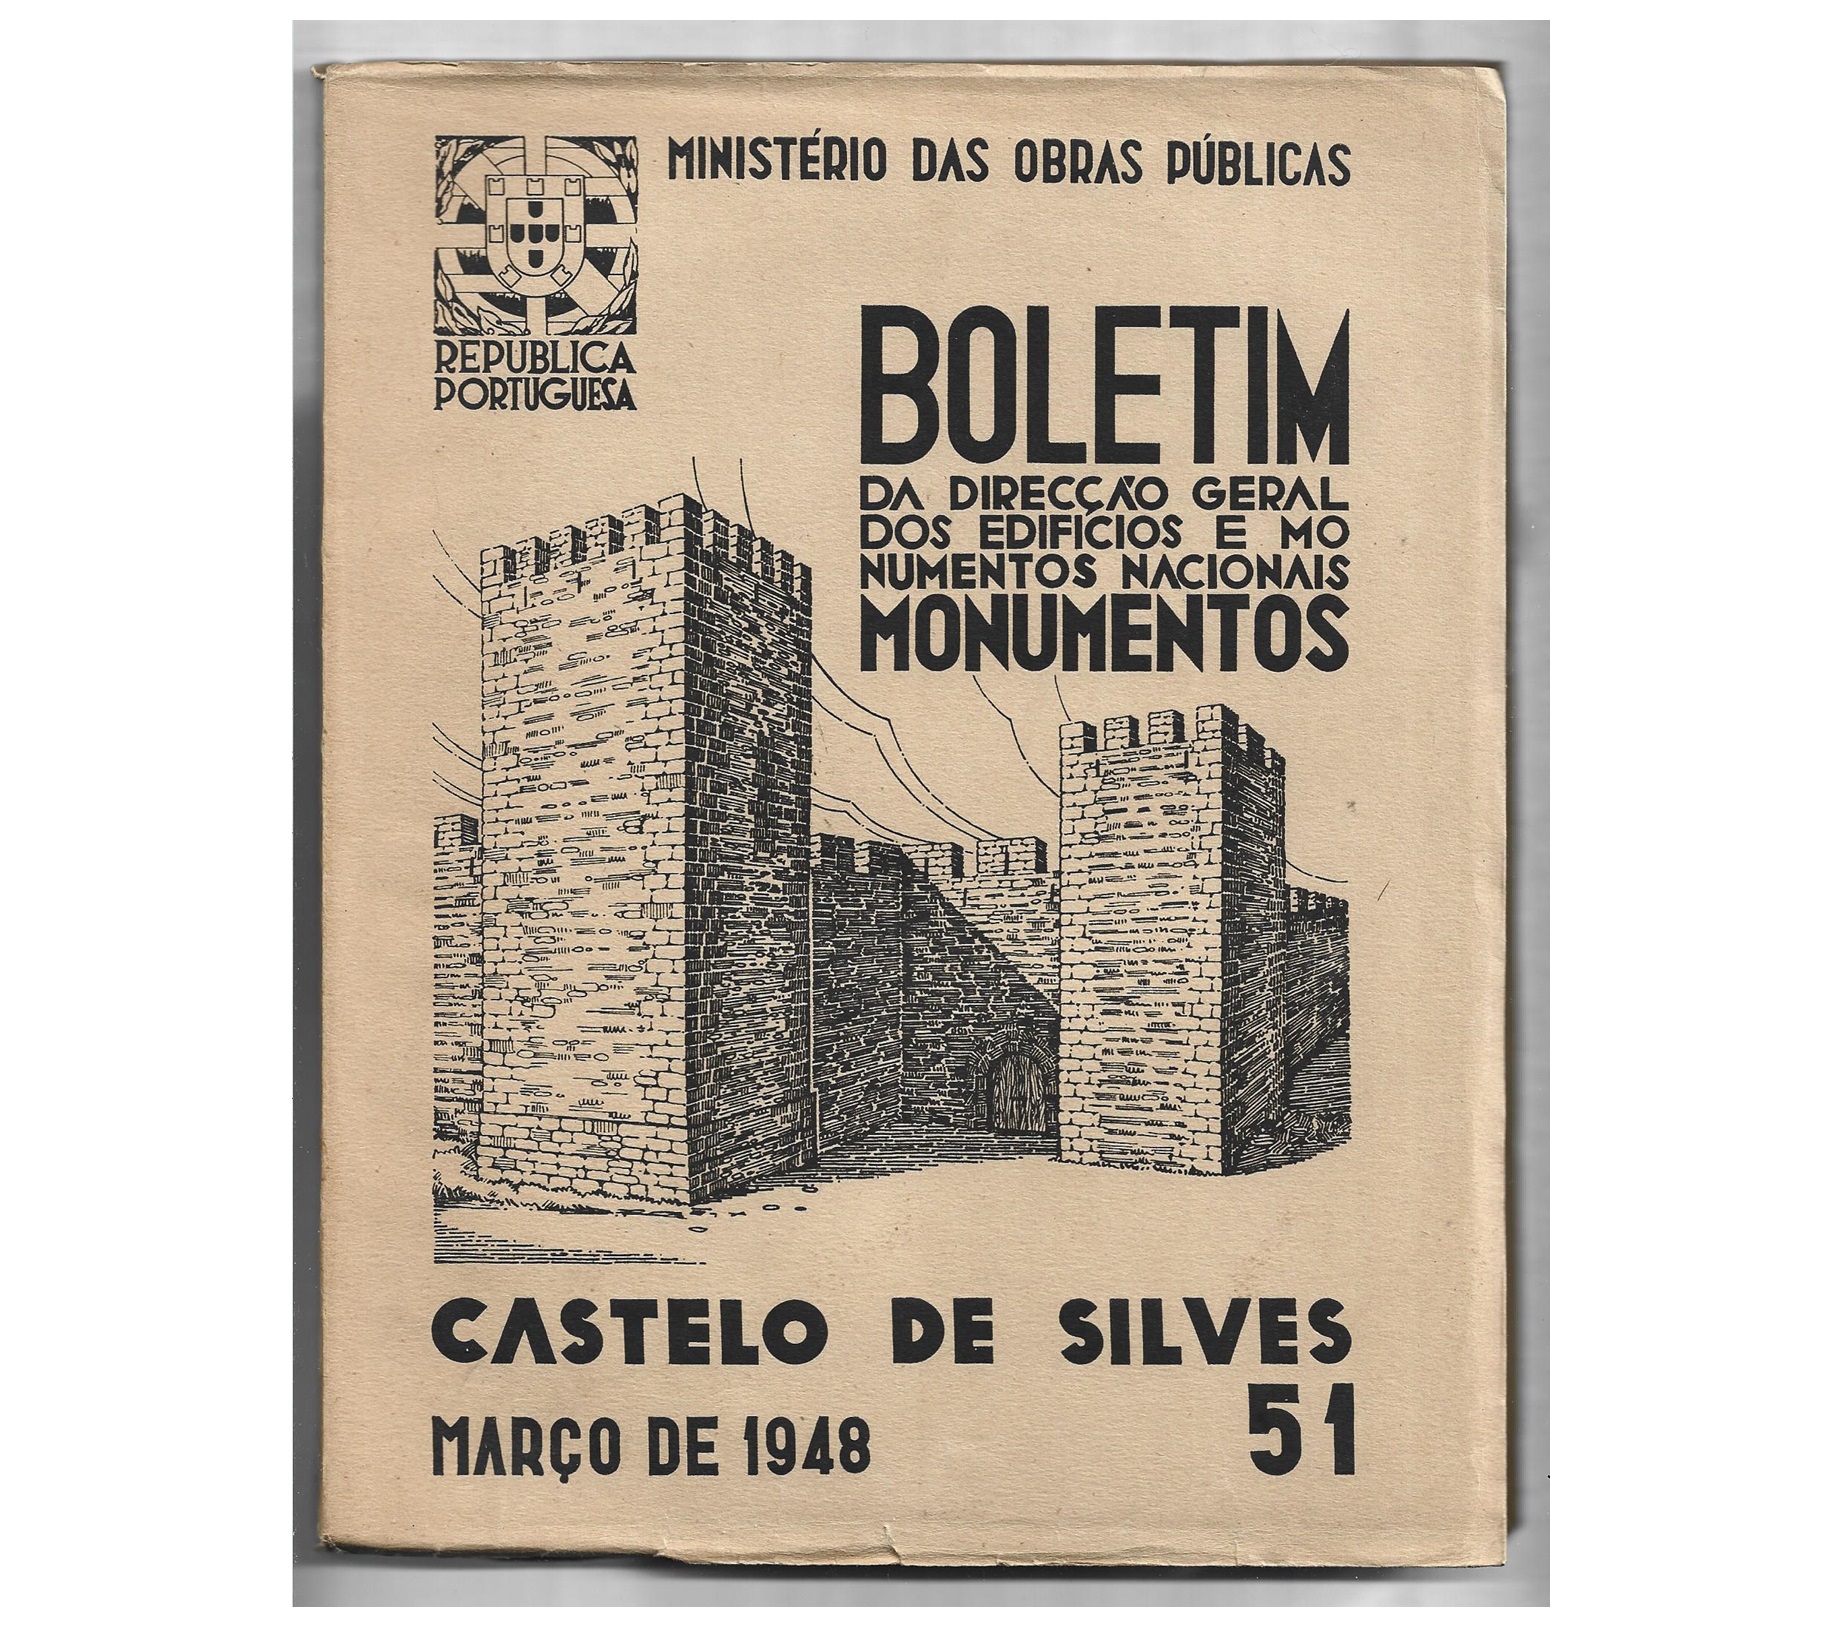 CASTELO DE SILVES